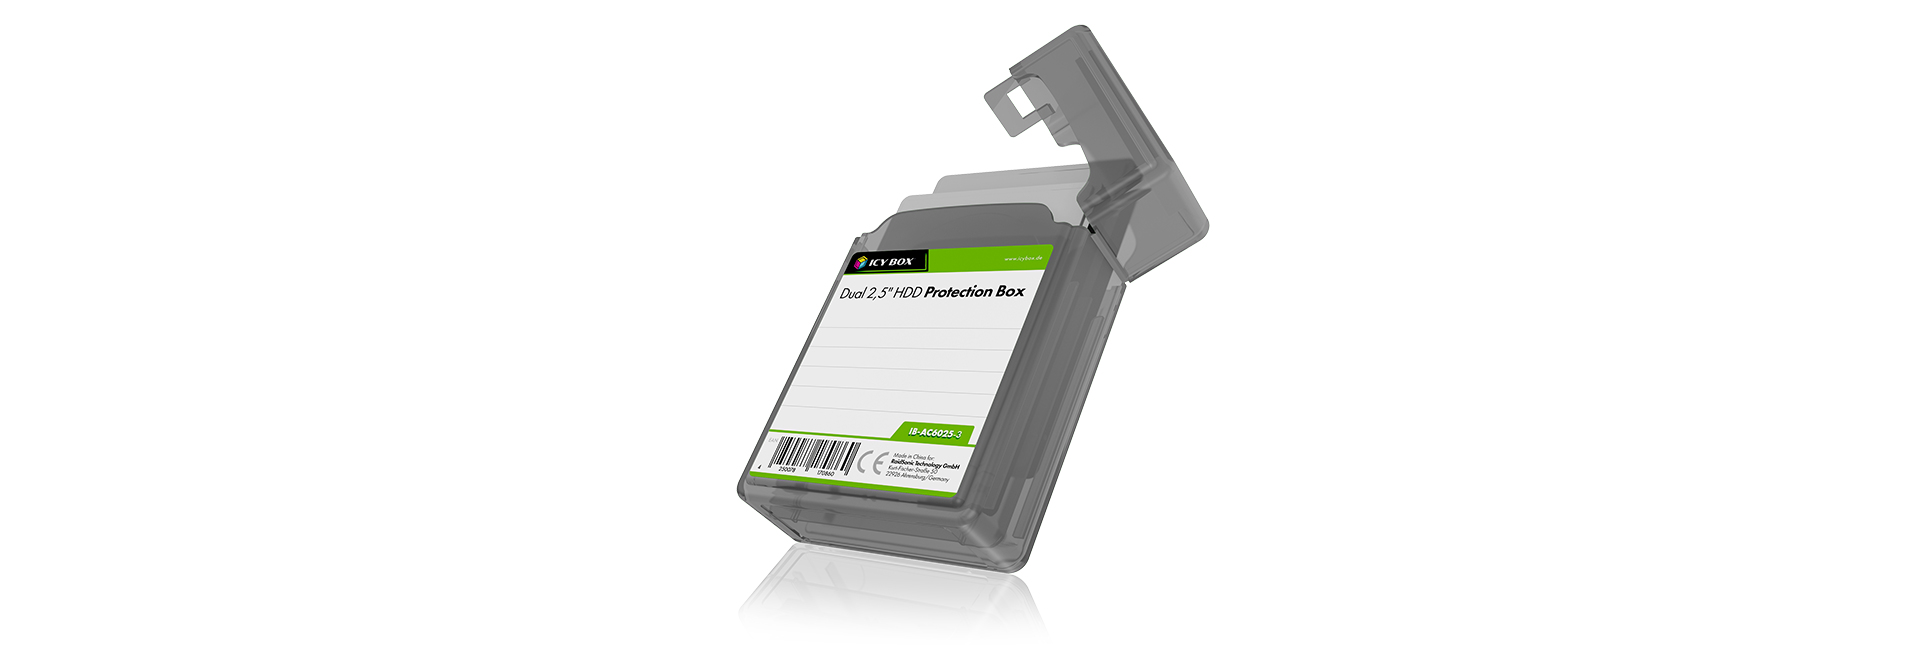 ICY BOX | Dual 2,5" HDD/SSD Box, transparent, drei Farben (grün, grau, weiß) | 3 Colour-2